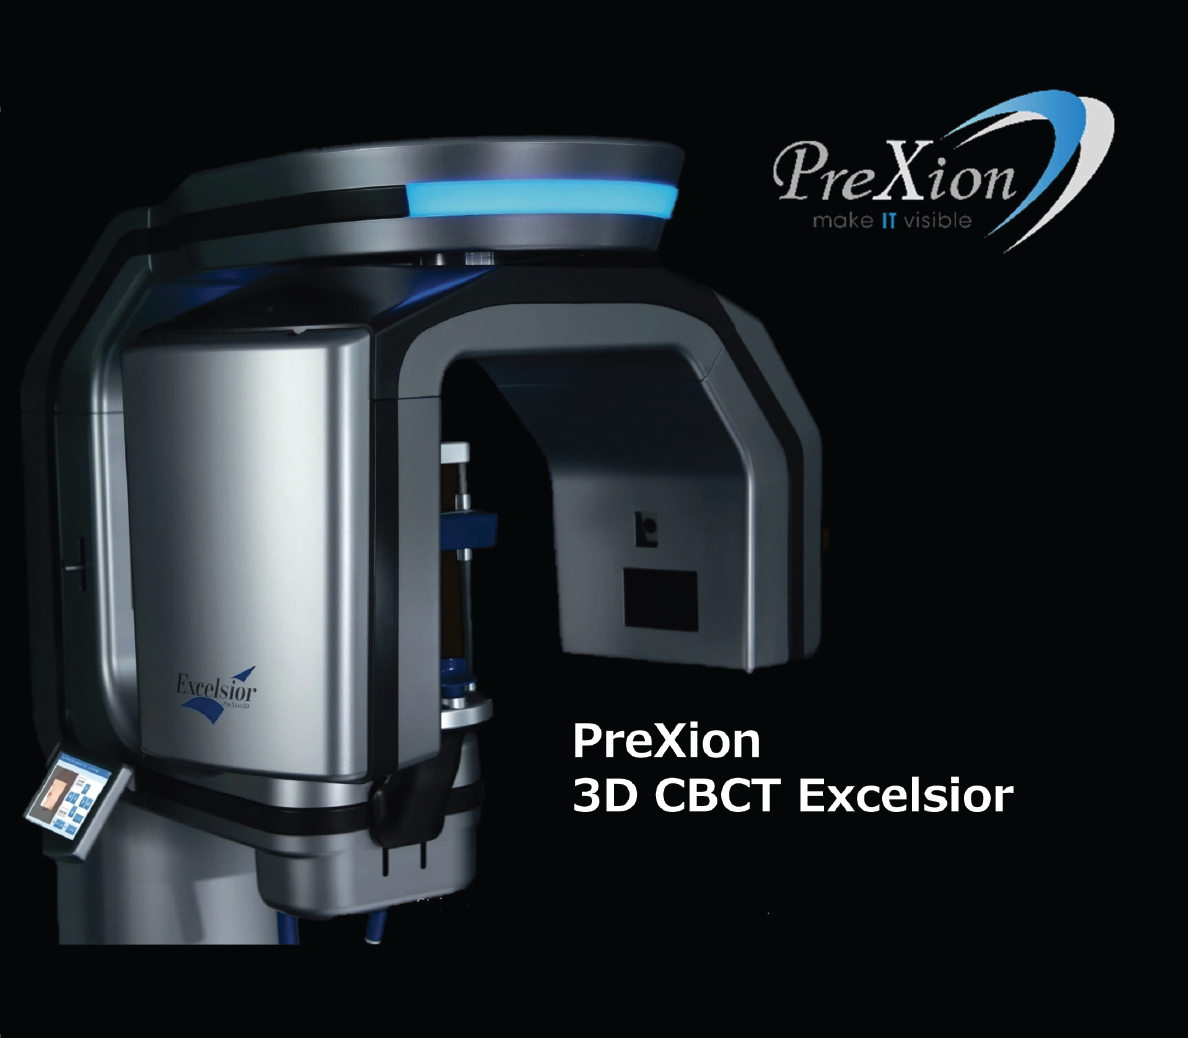 PreXion 3D Excelsior